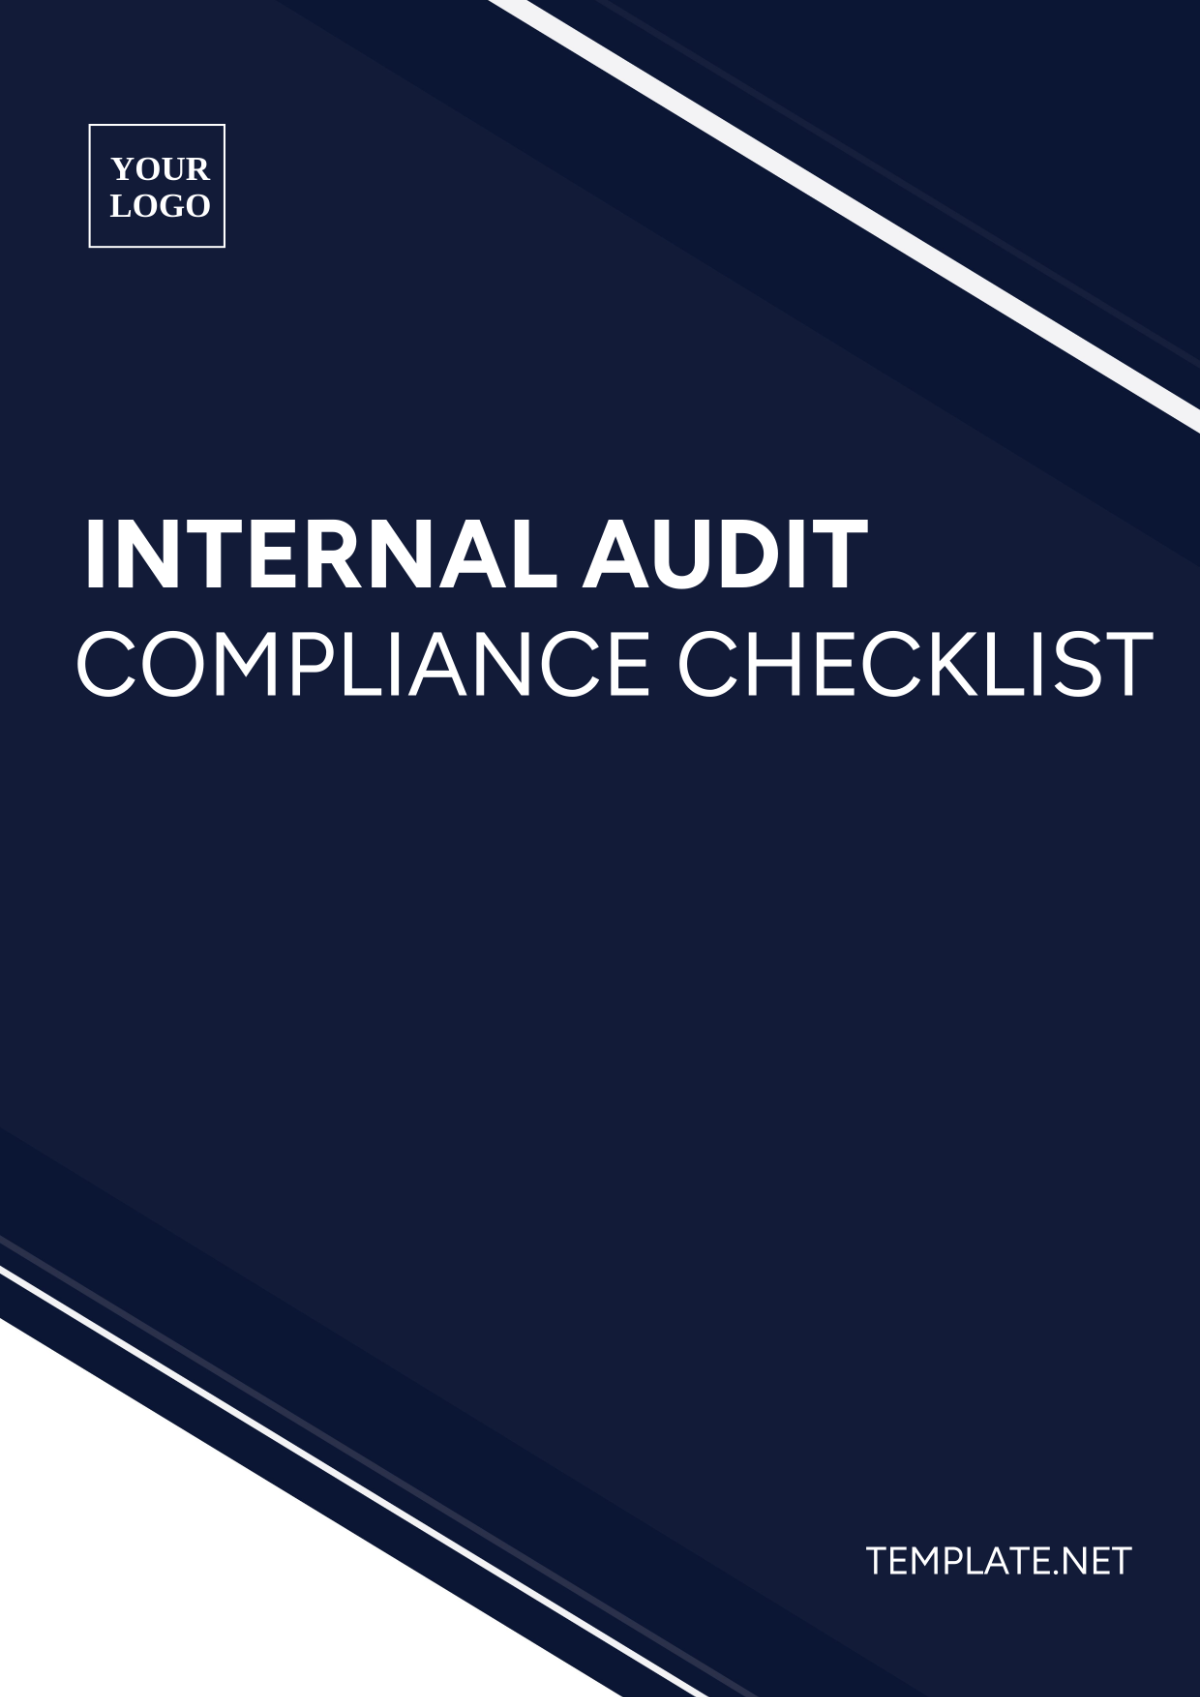 Internal Audit Compliance Checklist Template